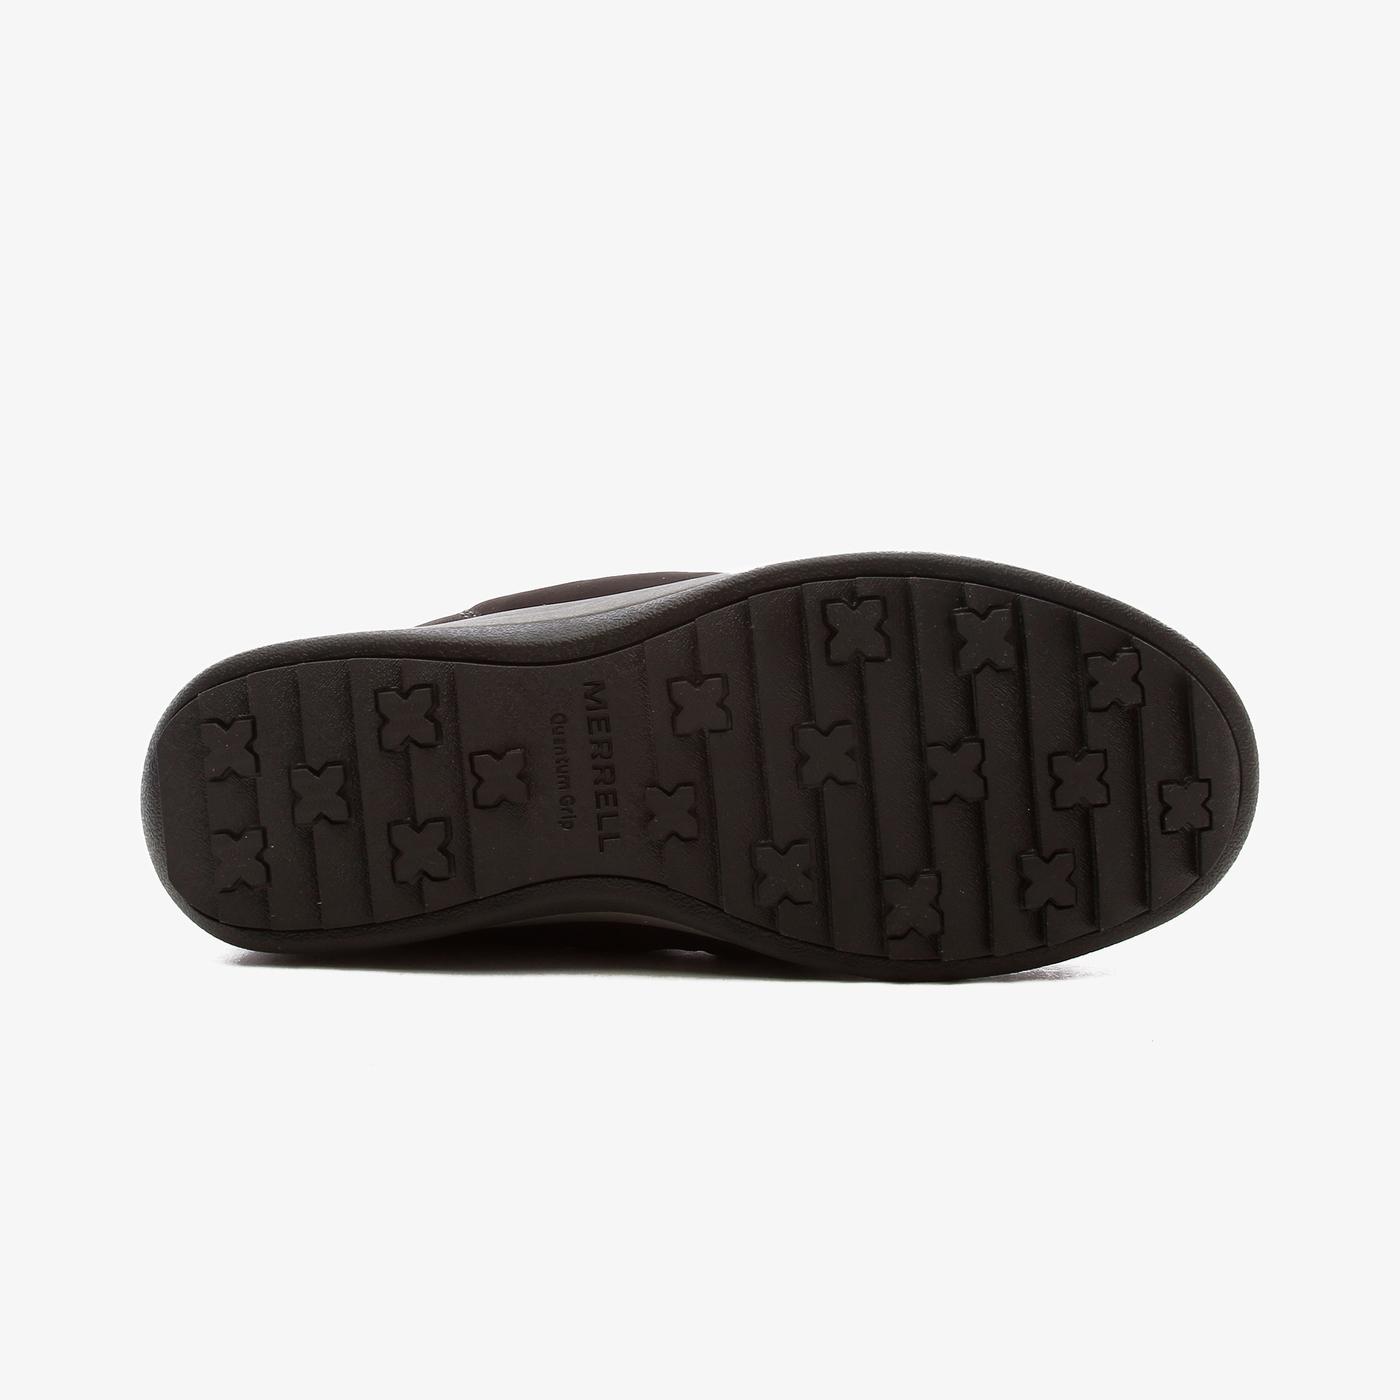 Merrell Snowcreek Crozy Waterproof Kadın Siyah Outdoor Ayakkabı